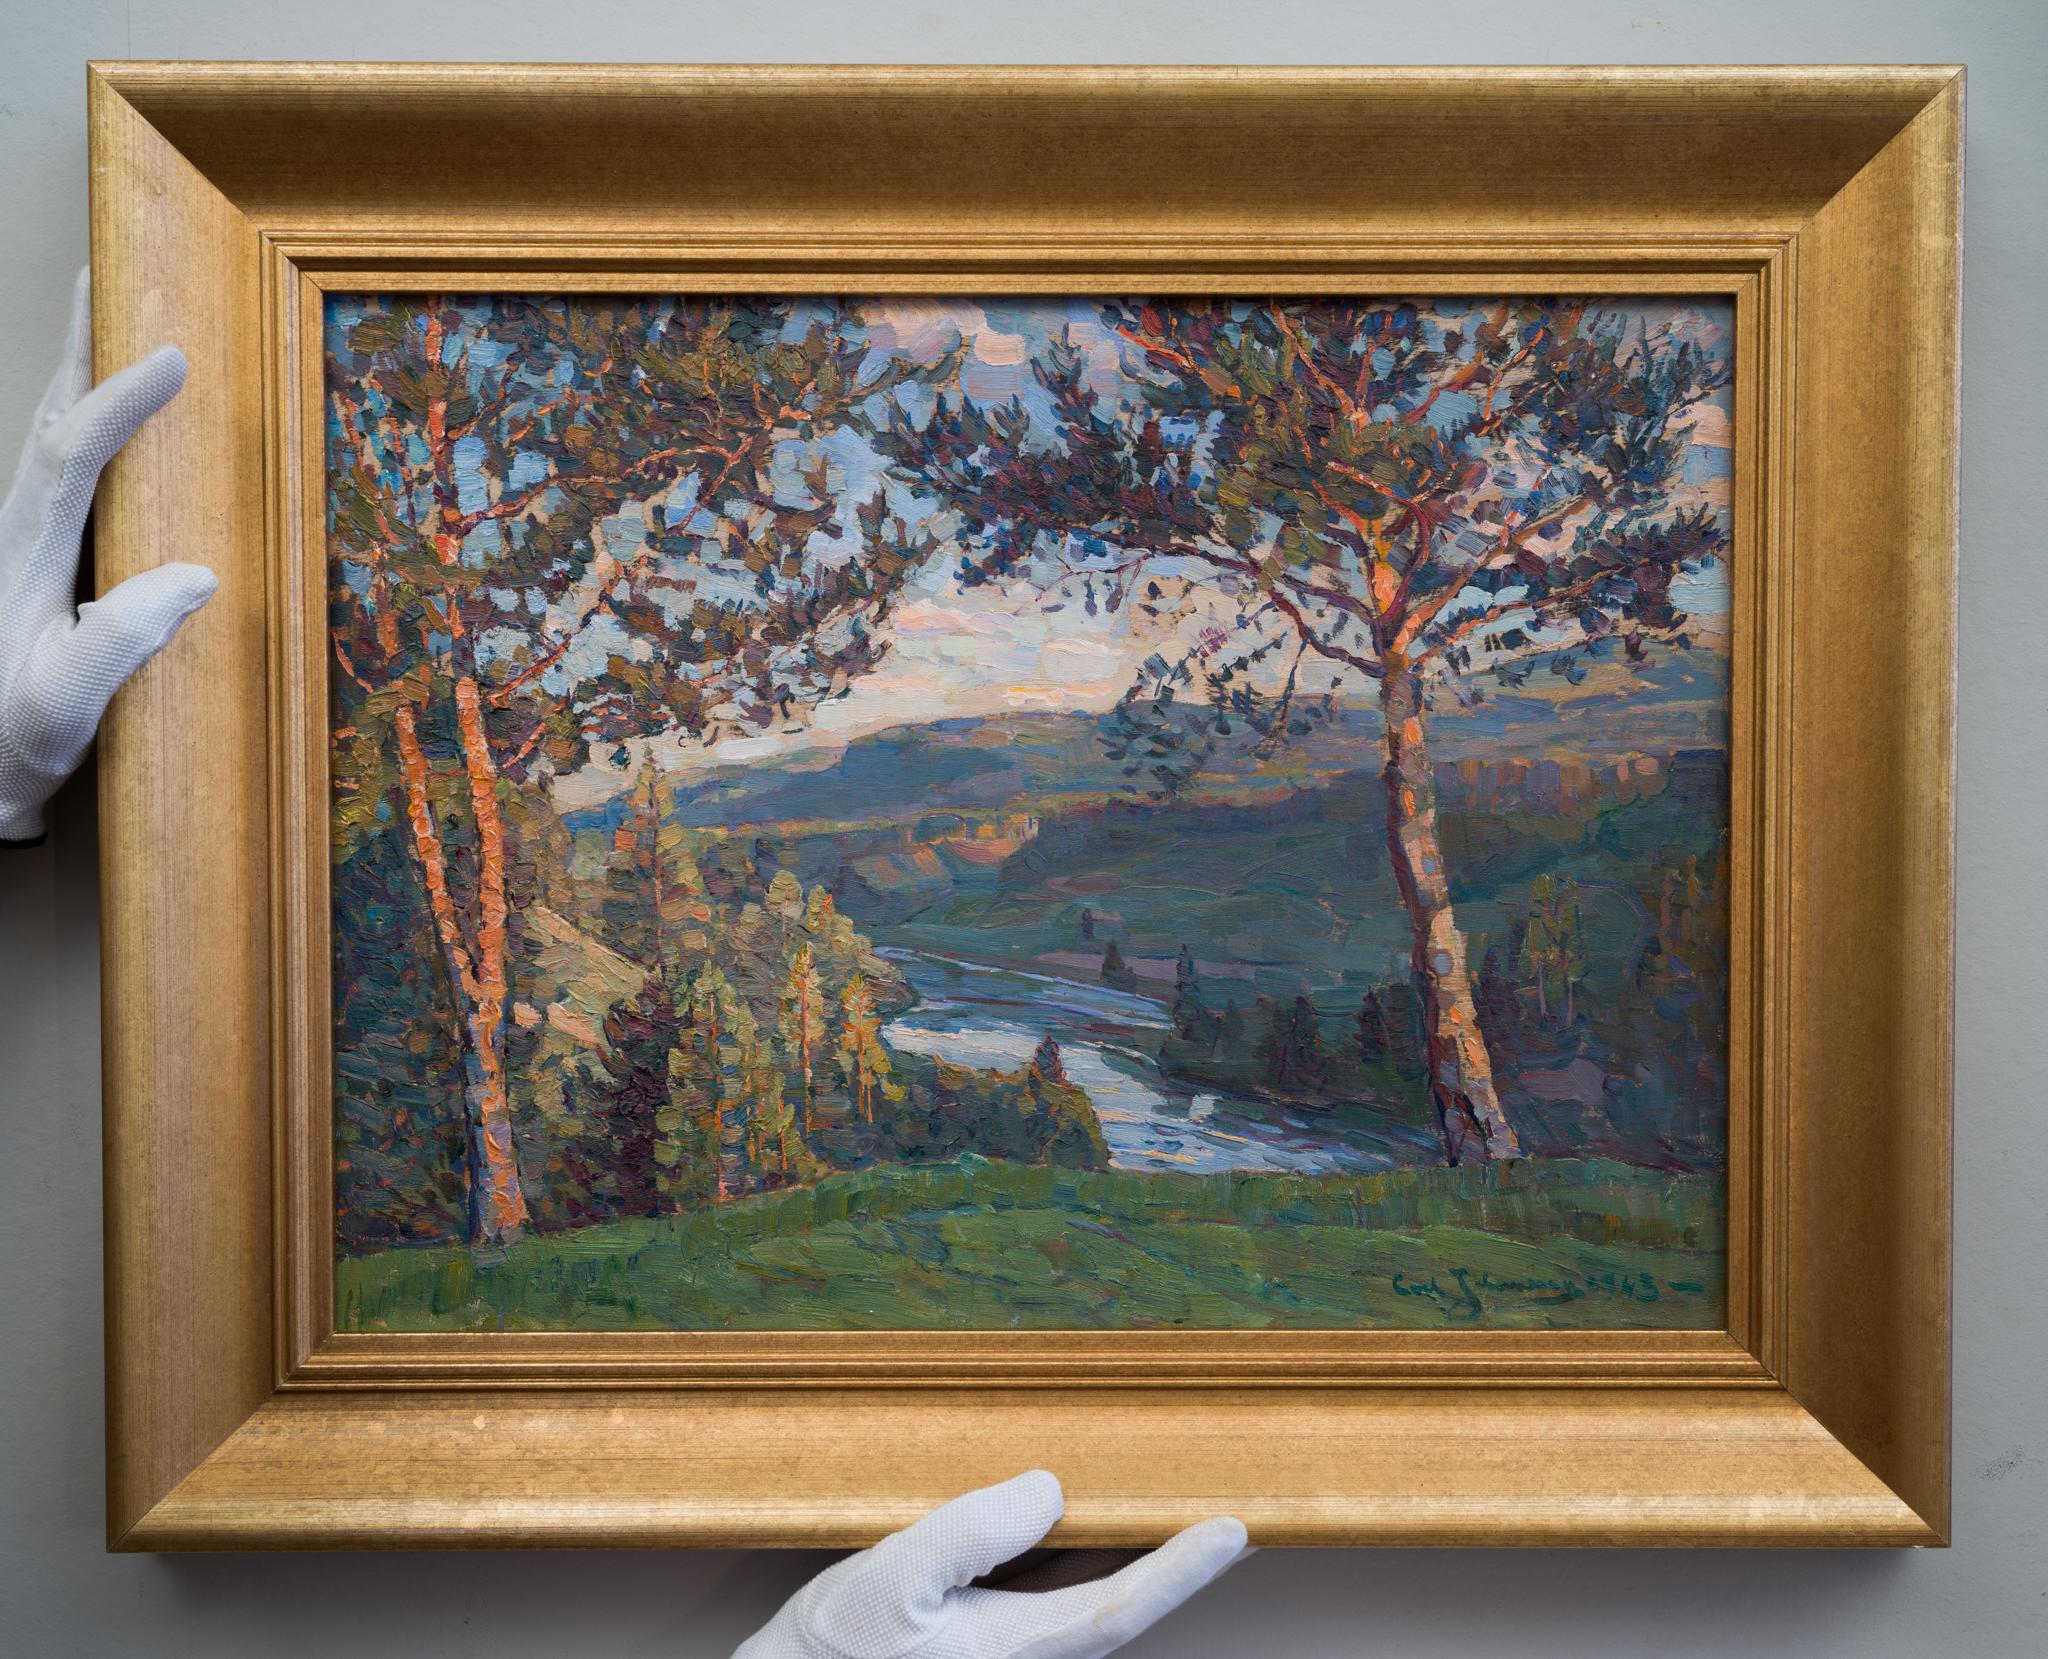 A Tranquil Landscape View, 1943 par Ultramarine Johansson - Painting de Carl Johansson 